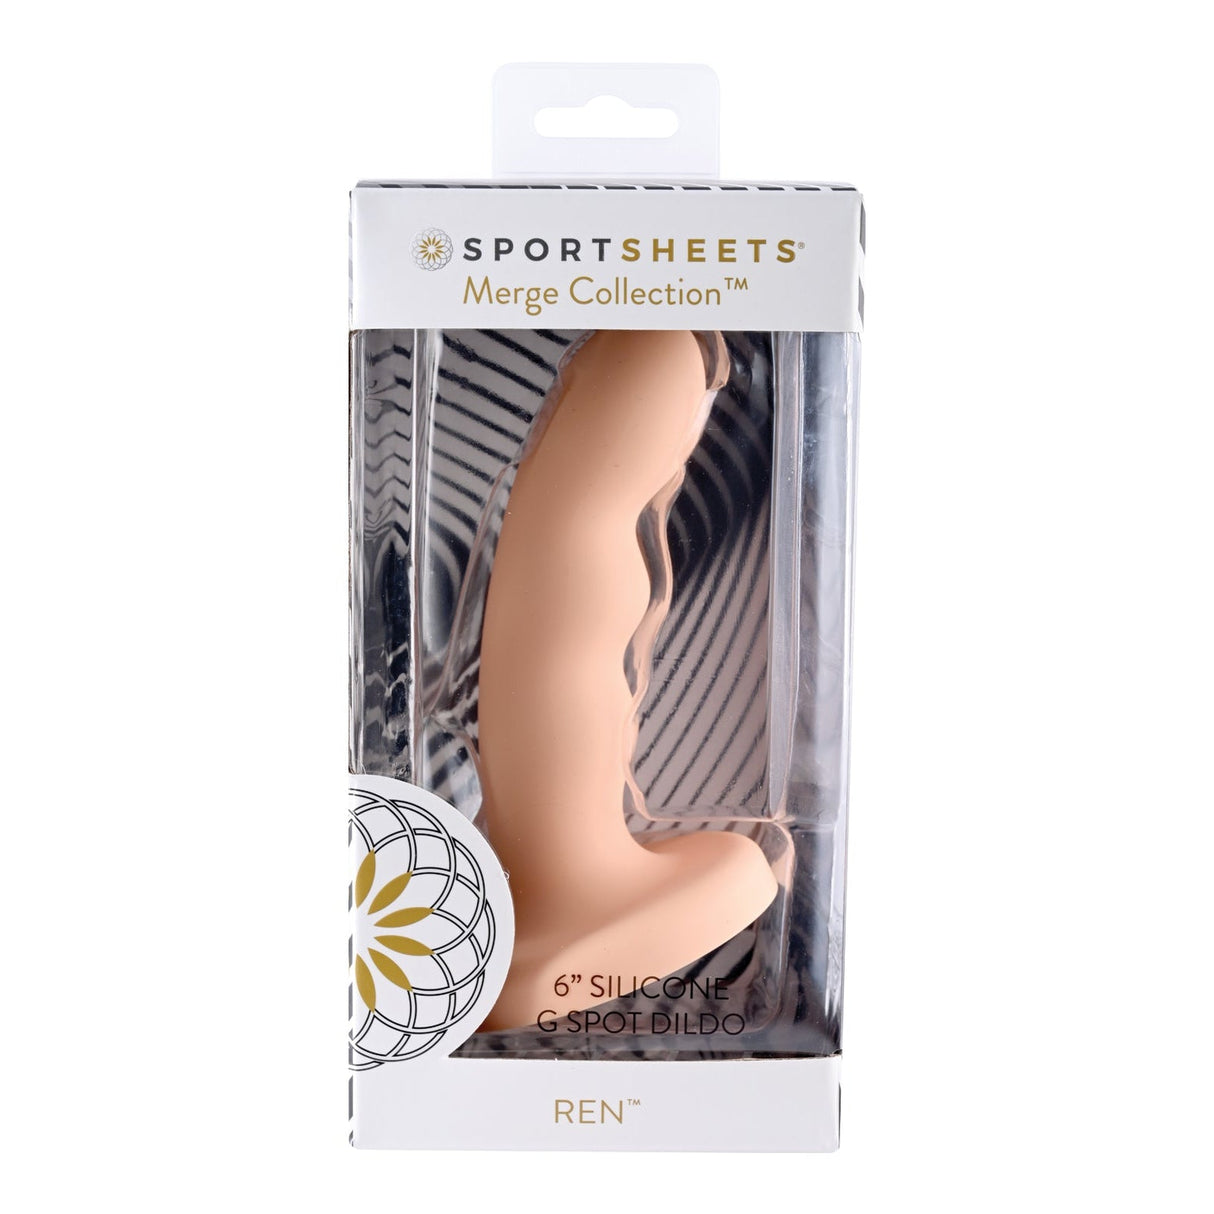 Sportsheets Ren 6 Inch Silicone G-Spot Dildo